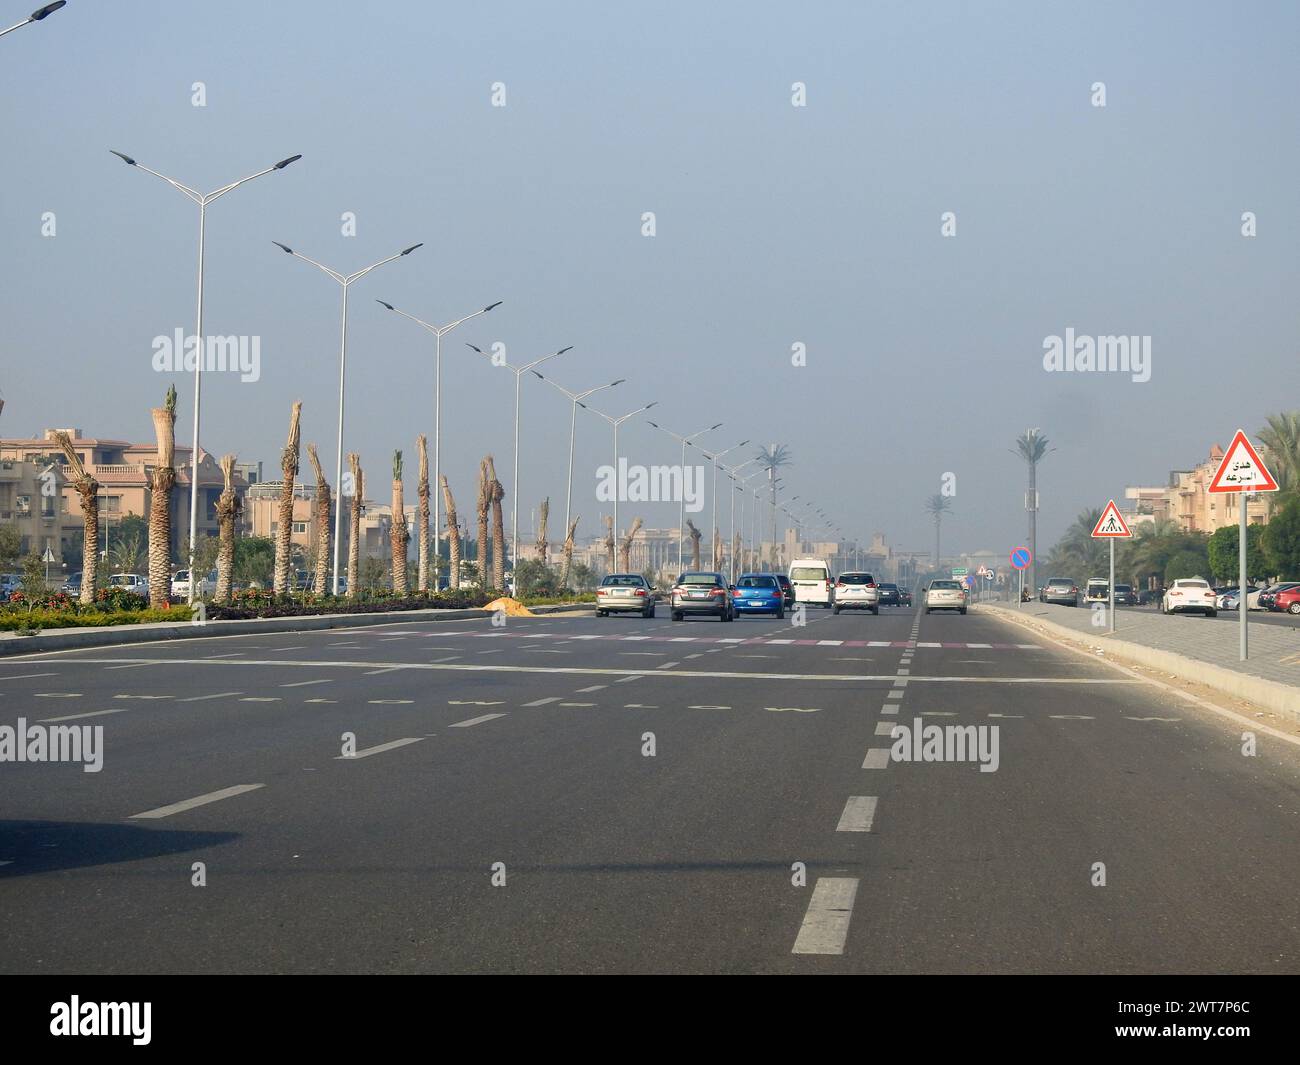 Le Caire, Égypte, 13 décembre 2022 : un panneau routier sur l'asphalte demandant aux véhicules de ralentir, passage piétonnier devant. Panneau indiquant traverser ahea Banque D'Images